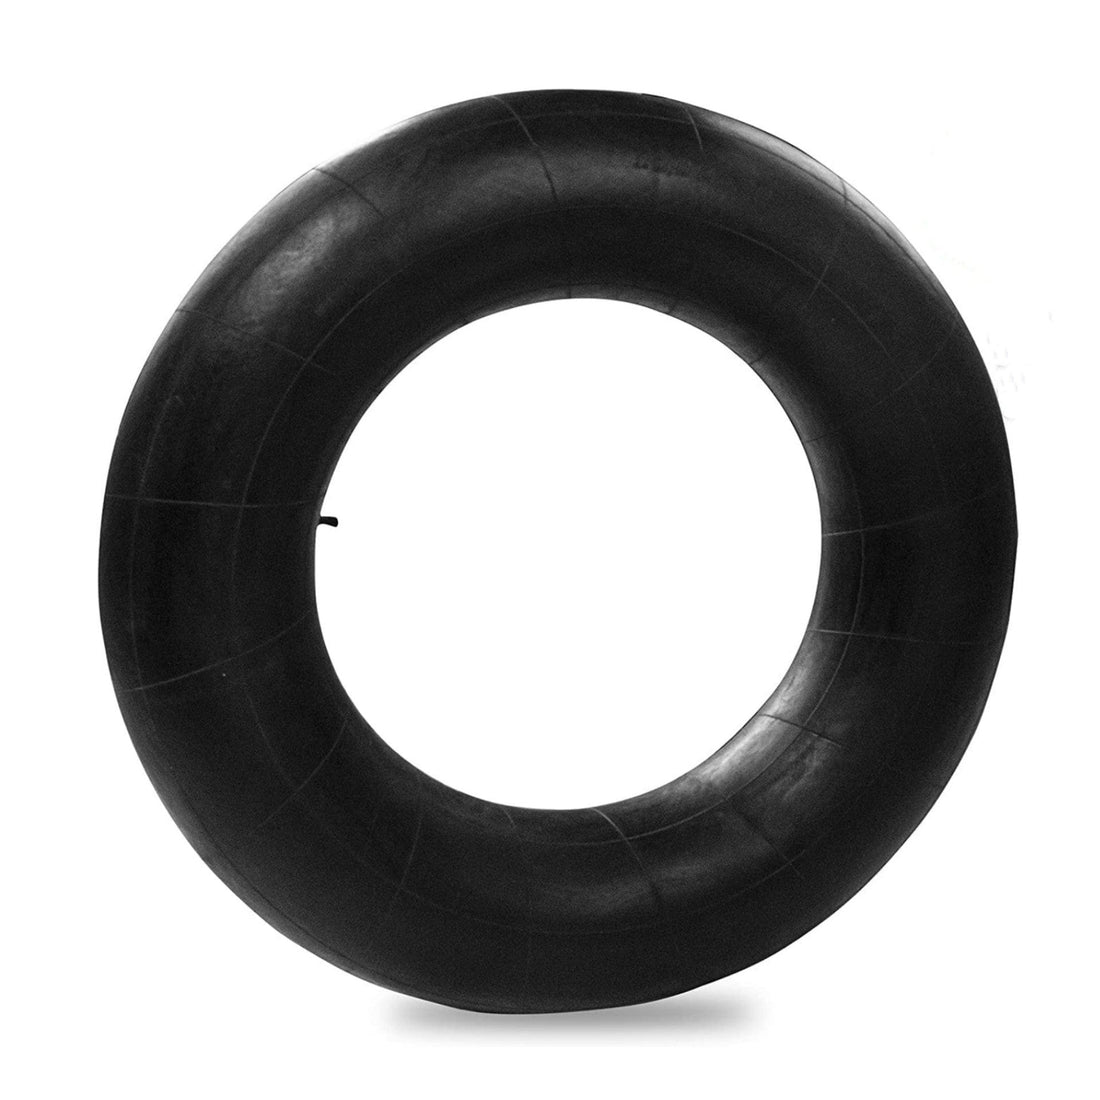 44" Black Rubber Tube - Heavy Duty for River & Snow Floating - GARVEE